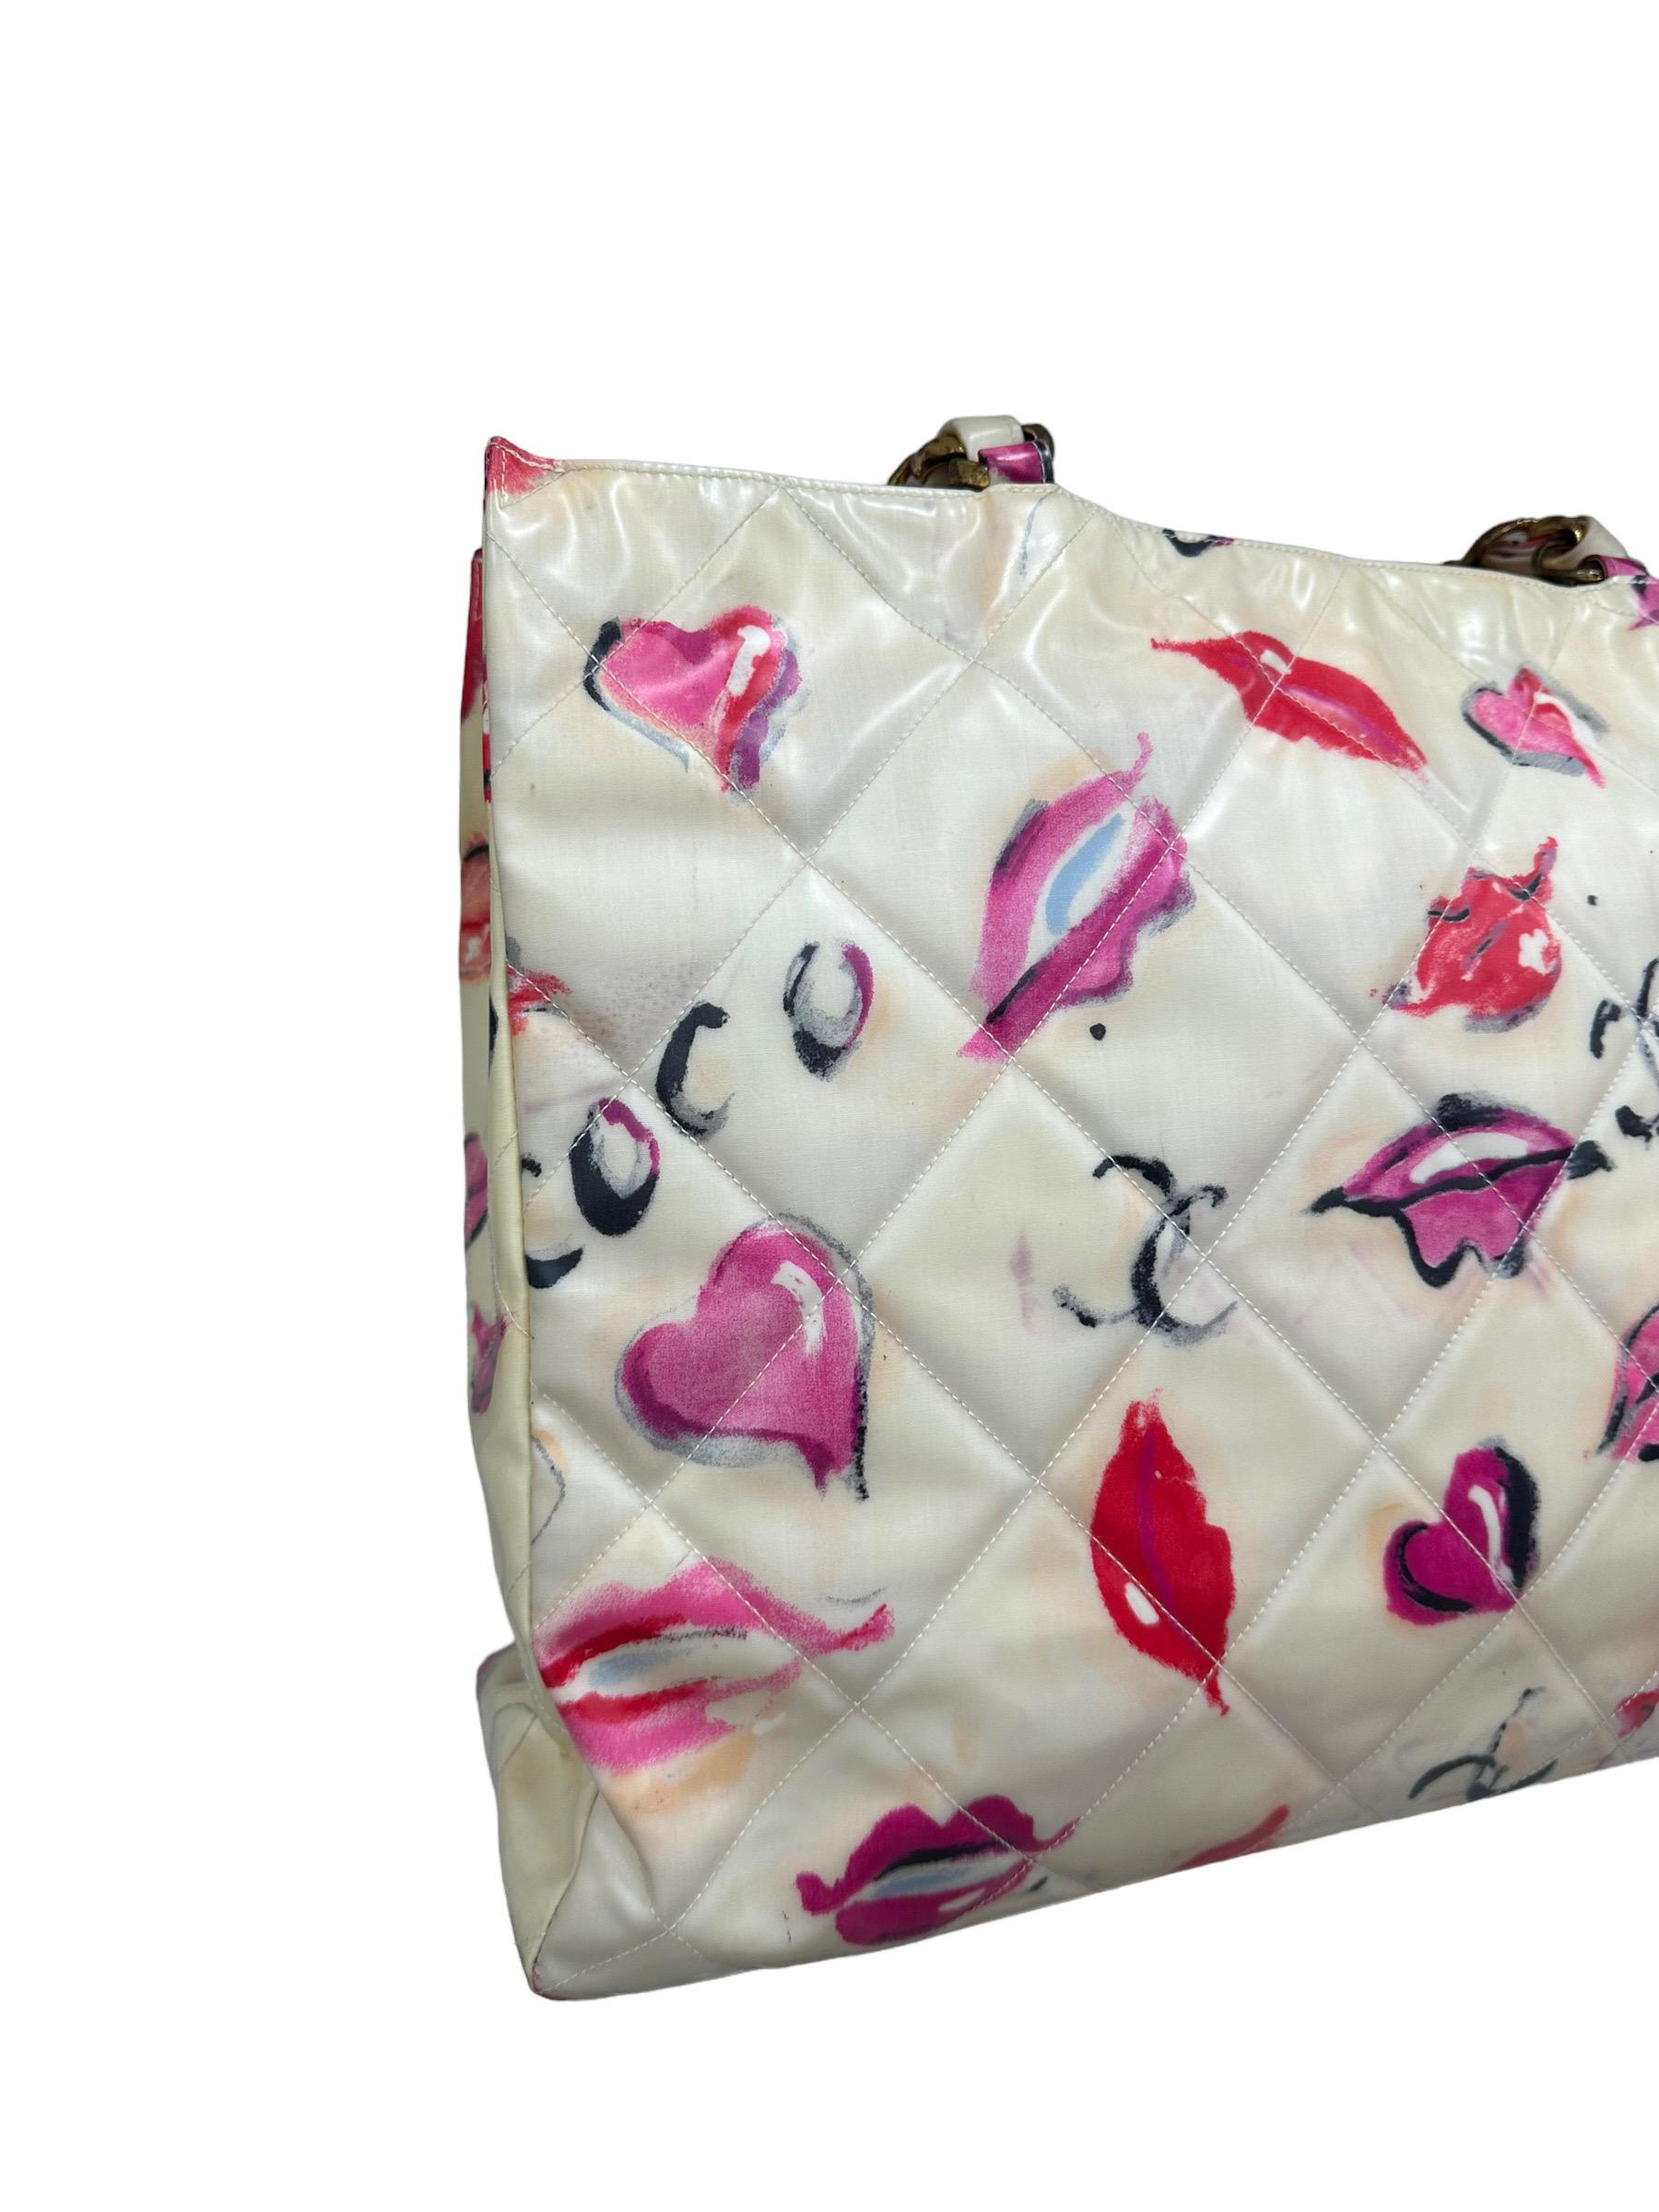 1994 Chanel Kisses & Lips Limited Edition Shoulder Bag For Sale 5